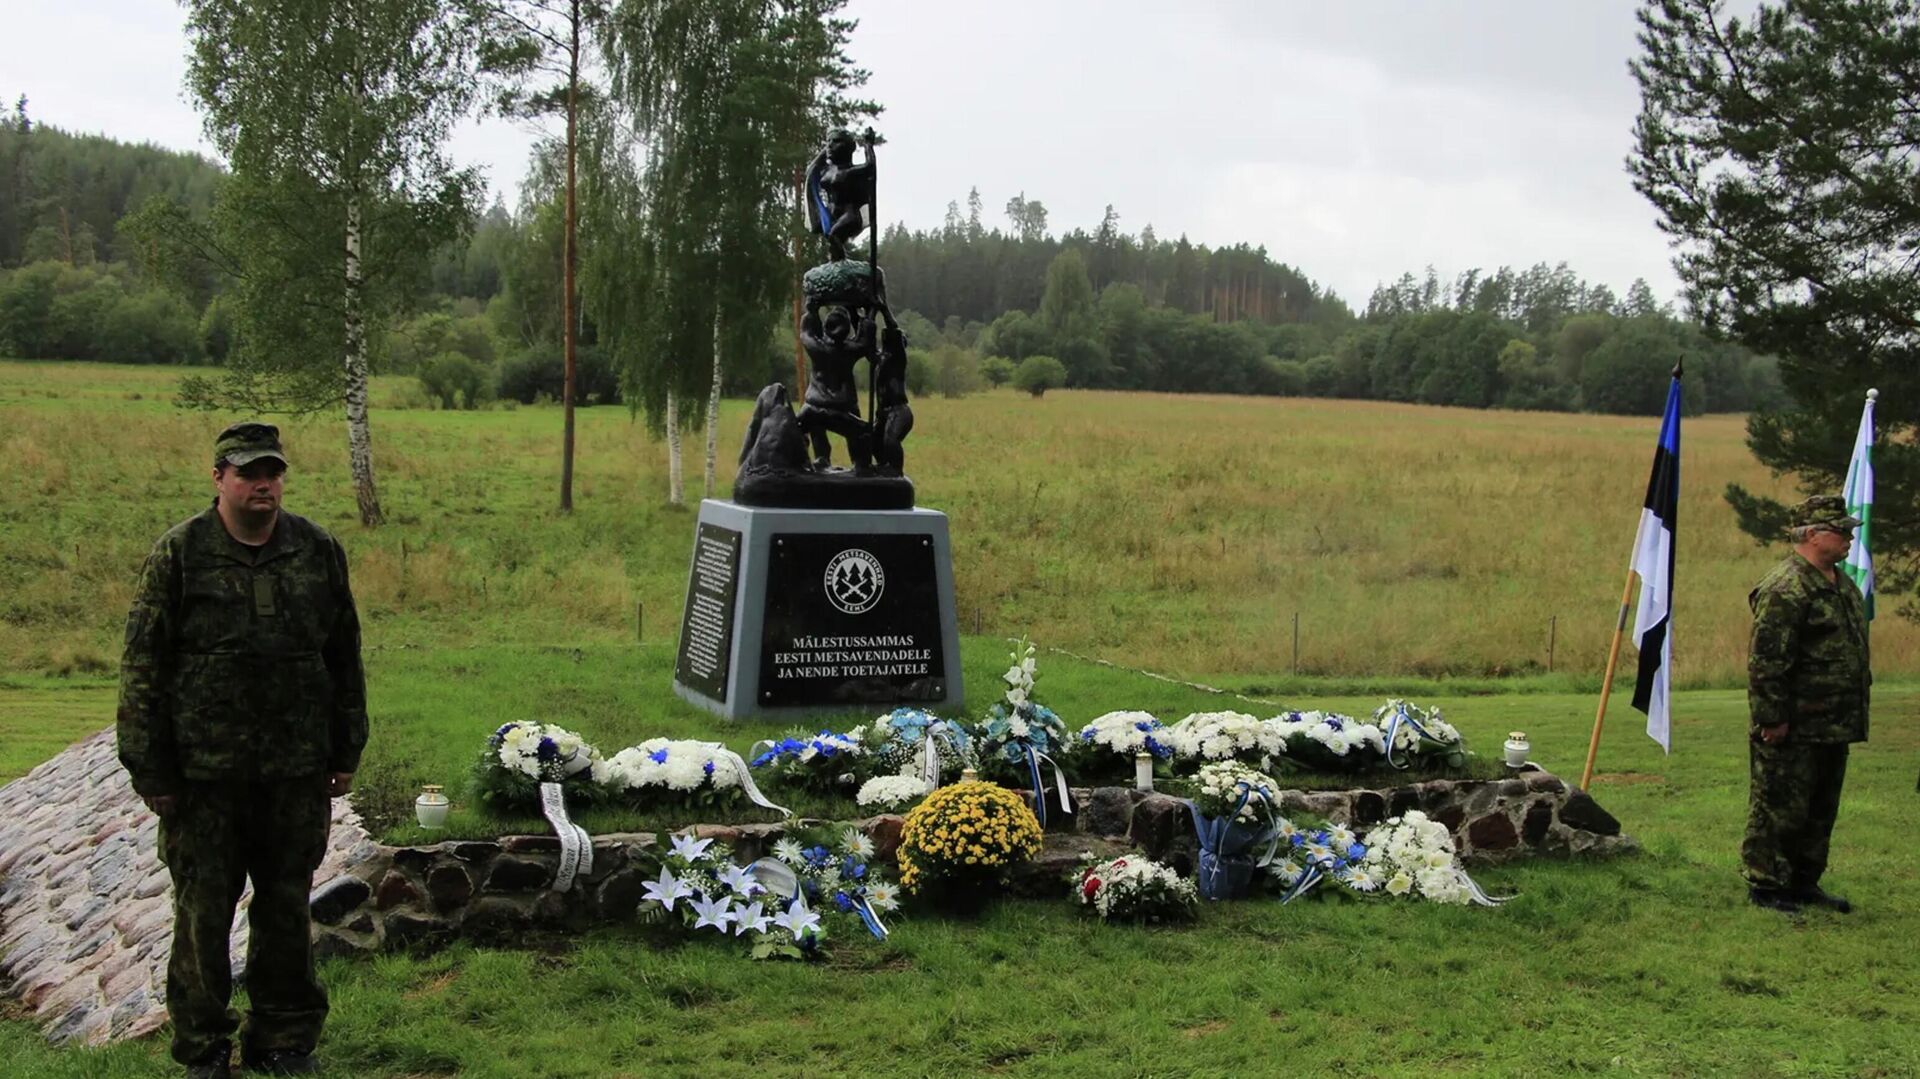 Открытие памятника членам вооруженных националистических формирований, известным под общим названием лесные братья, в Эстонии - РИА Новости, 1920, 23.08.2021